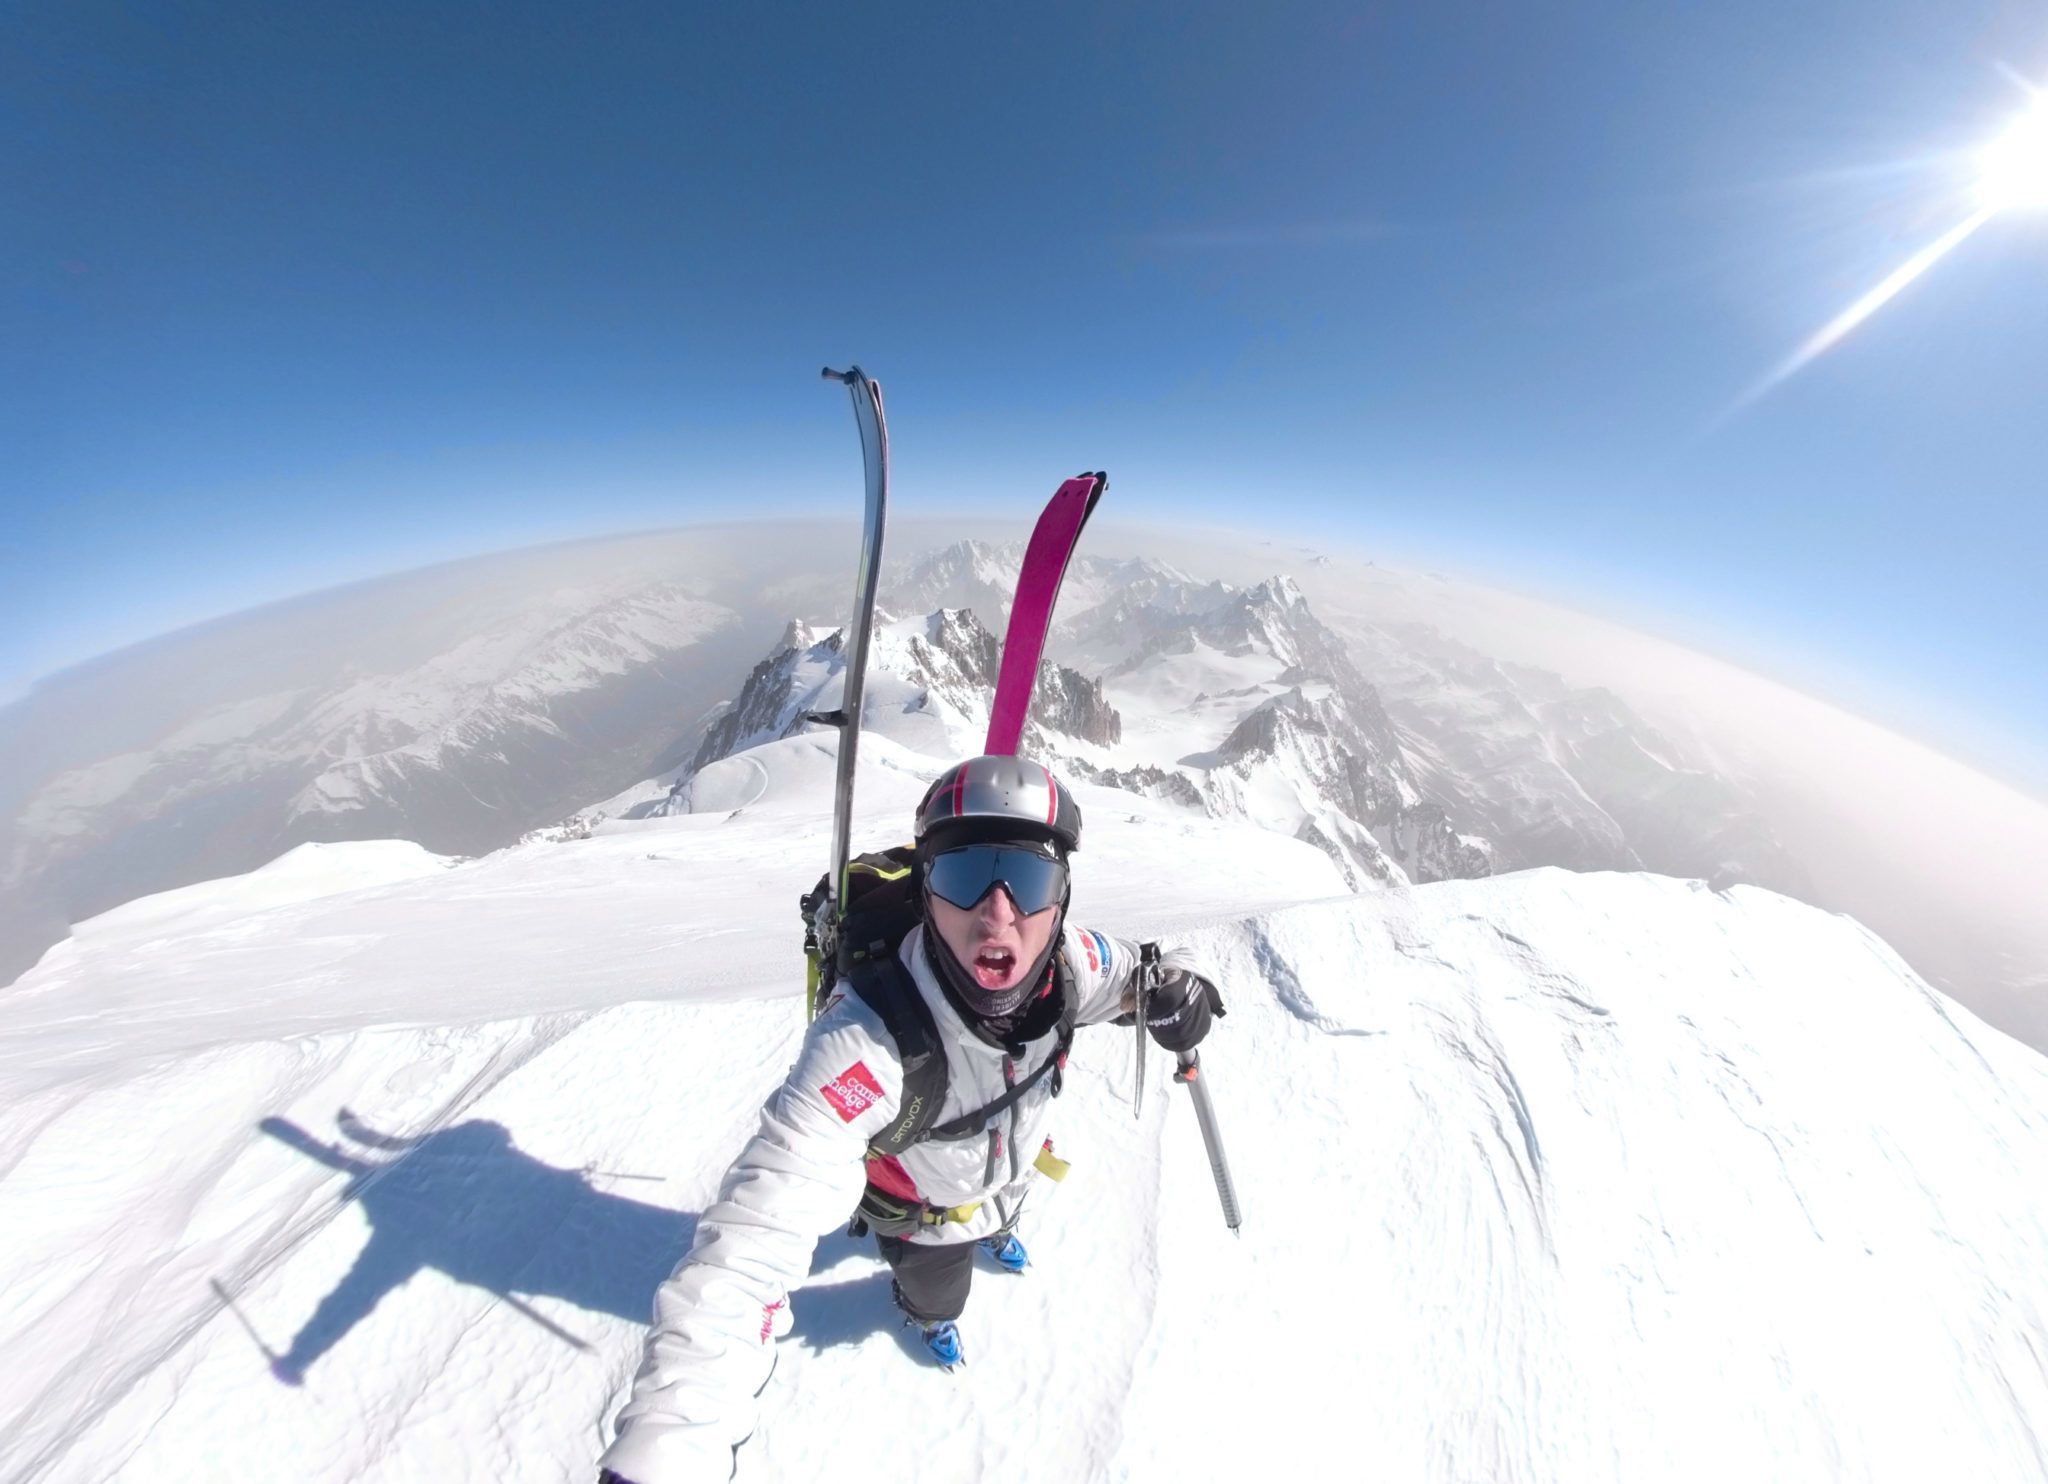 El esquí de montaña ya es oficialmente olímpico